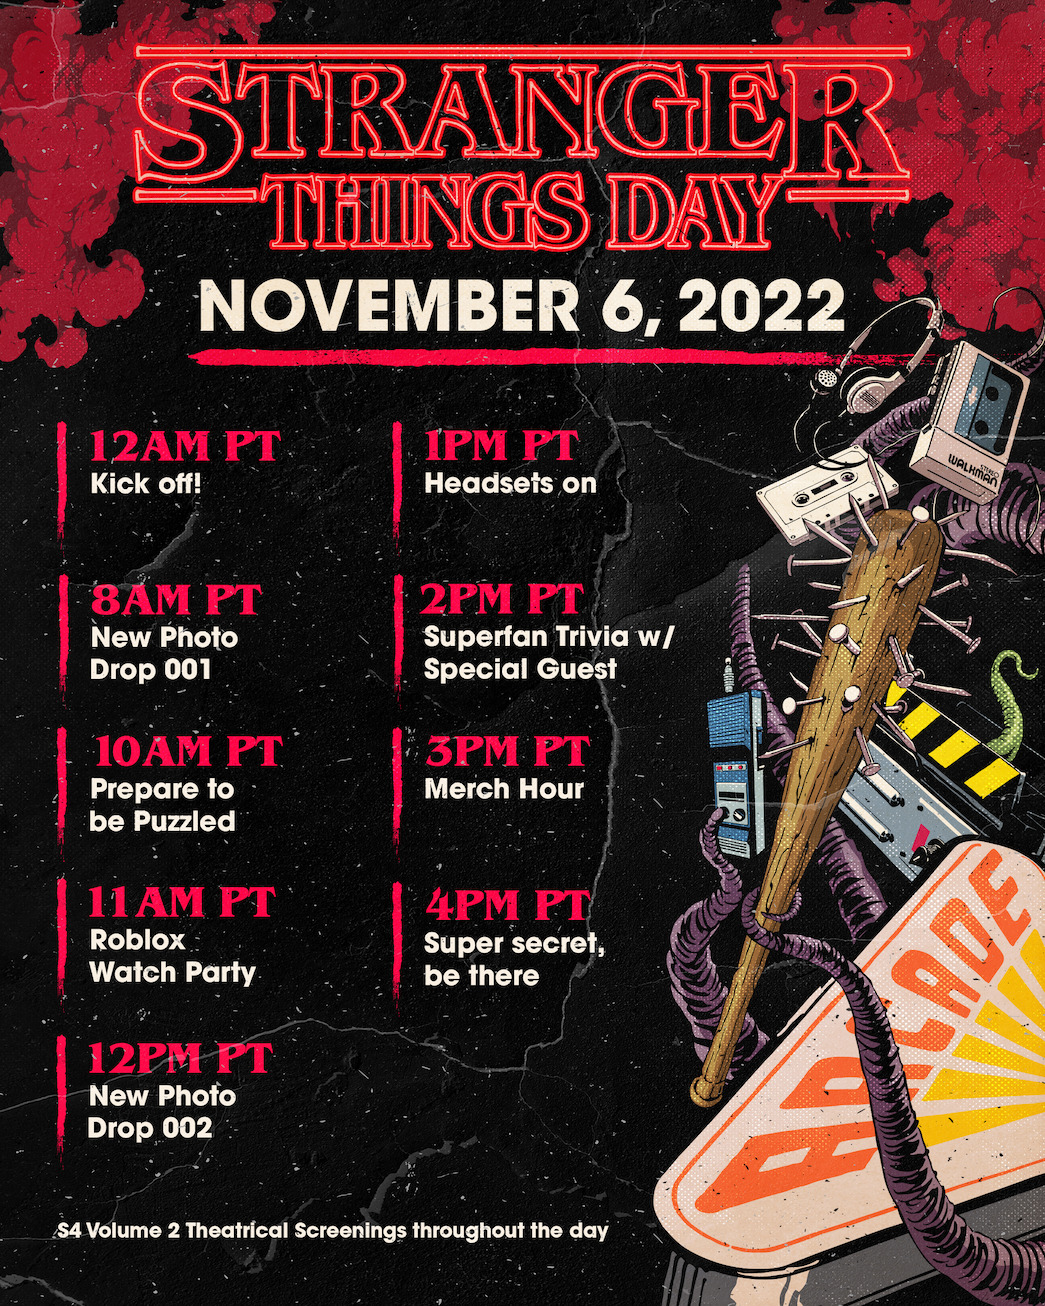 Netflix Tudum Stranger Things Day 2024
Hãy kết nối đến thế giới kỳ diệu của Stranger Things Day năm 2024 thông qua sự kiện Netflix Tudum. Đó là ngày lễ để các fan hâm mộ khắp nơi trên thế giới cùng nhảy múa với những bài hát và đi theo những chủ đề của phim. Hãy cùng chúng tôi đón chờ ngày hội này.